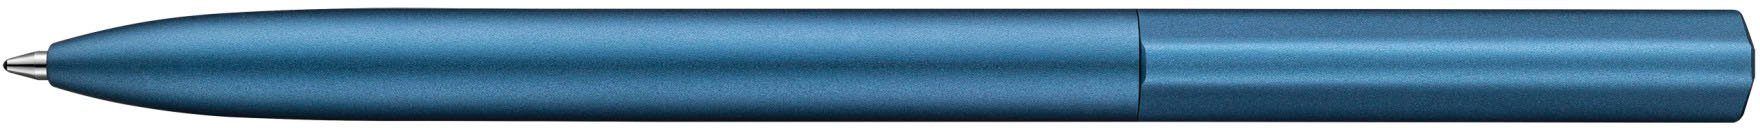 Drehkugelschreiber blue K6 ocean Ineo®, Pelikan